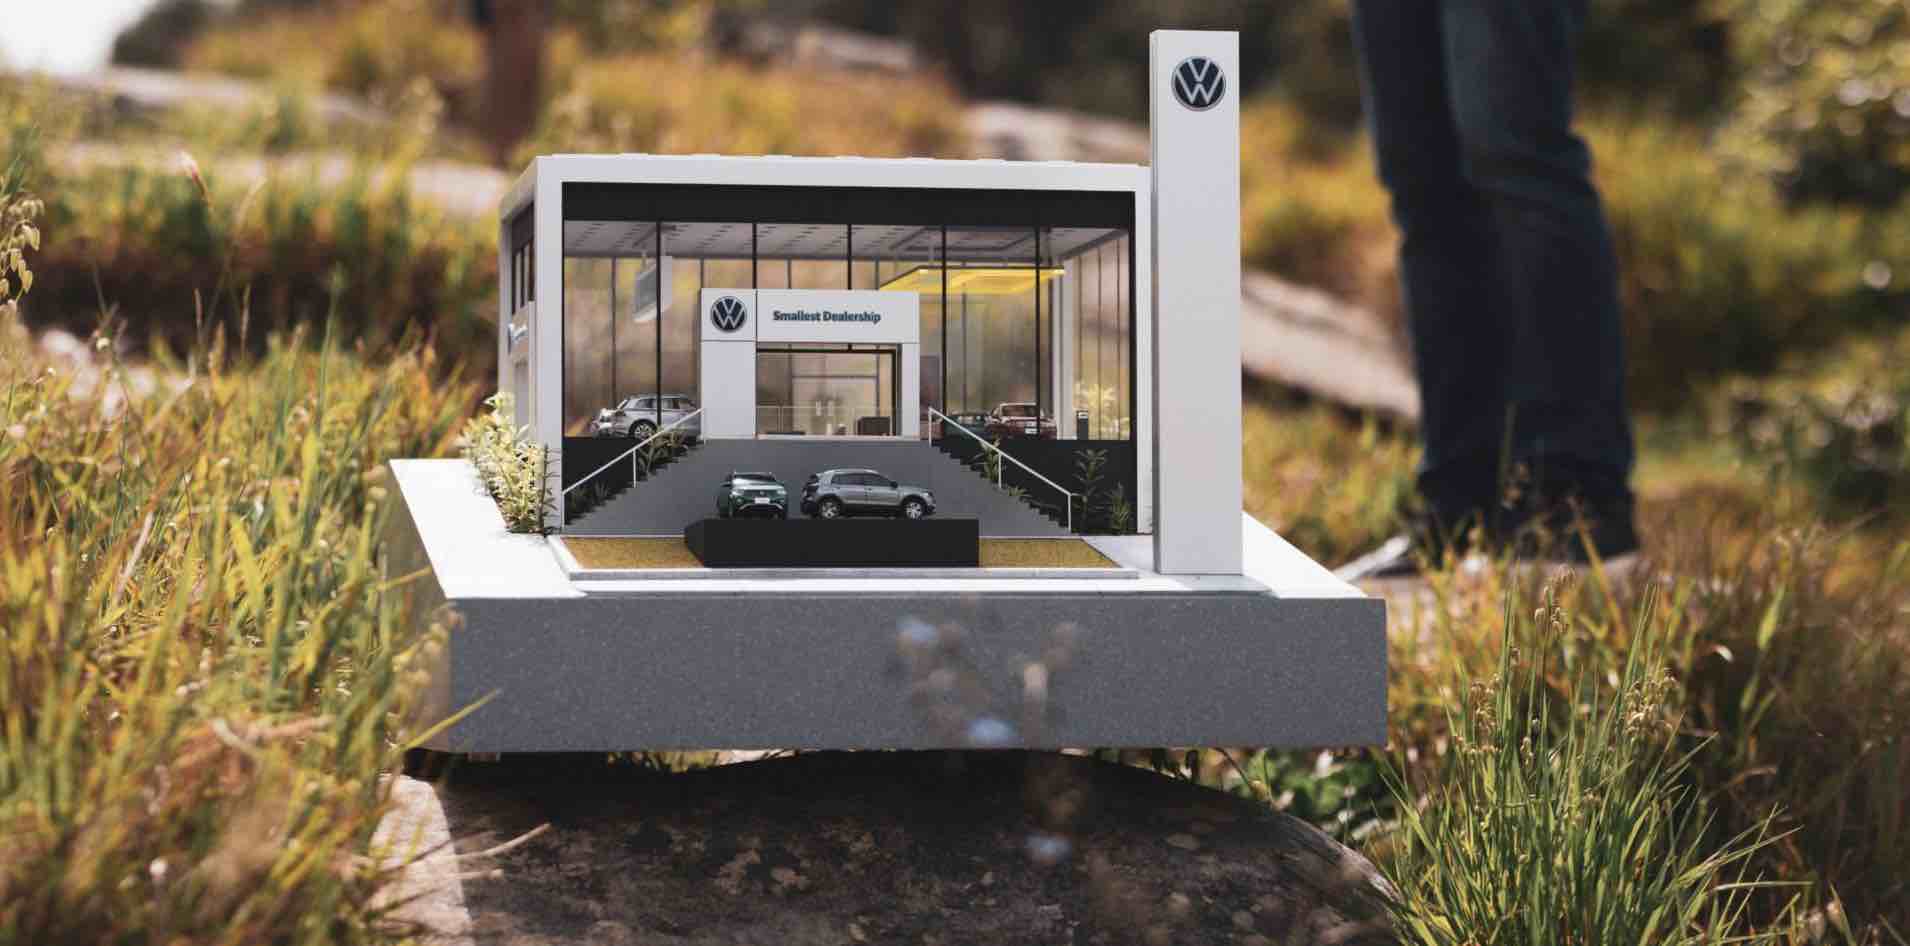 Volkswagen opent het kleinste verkooppunt ter wereld (Focalys)